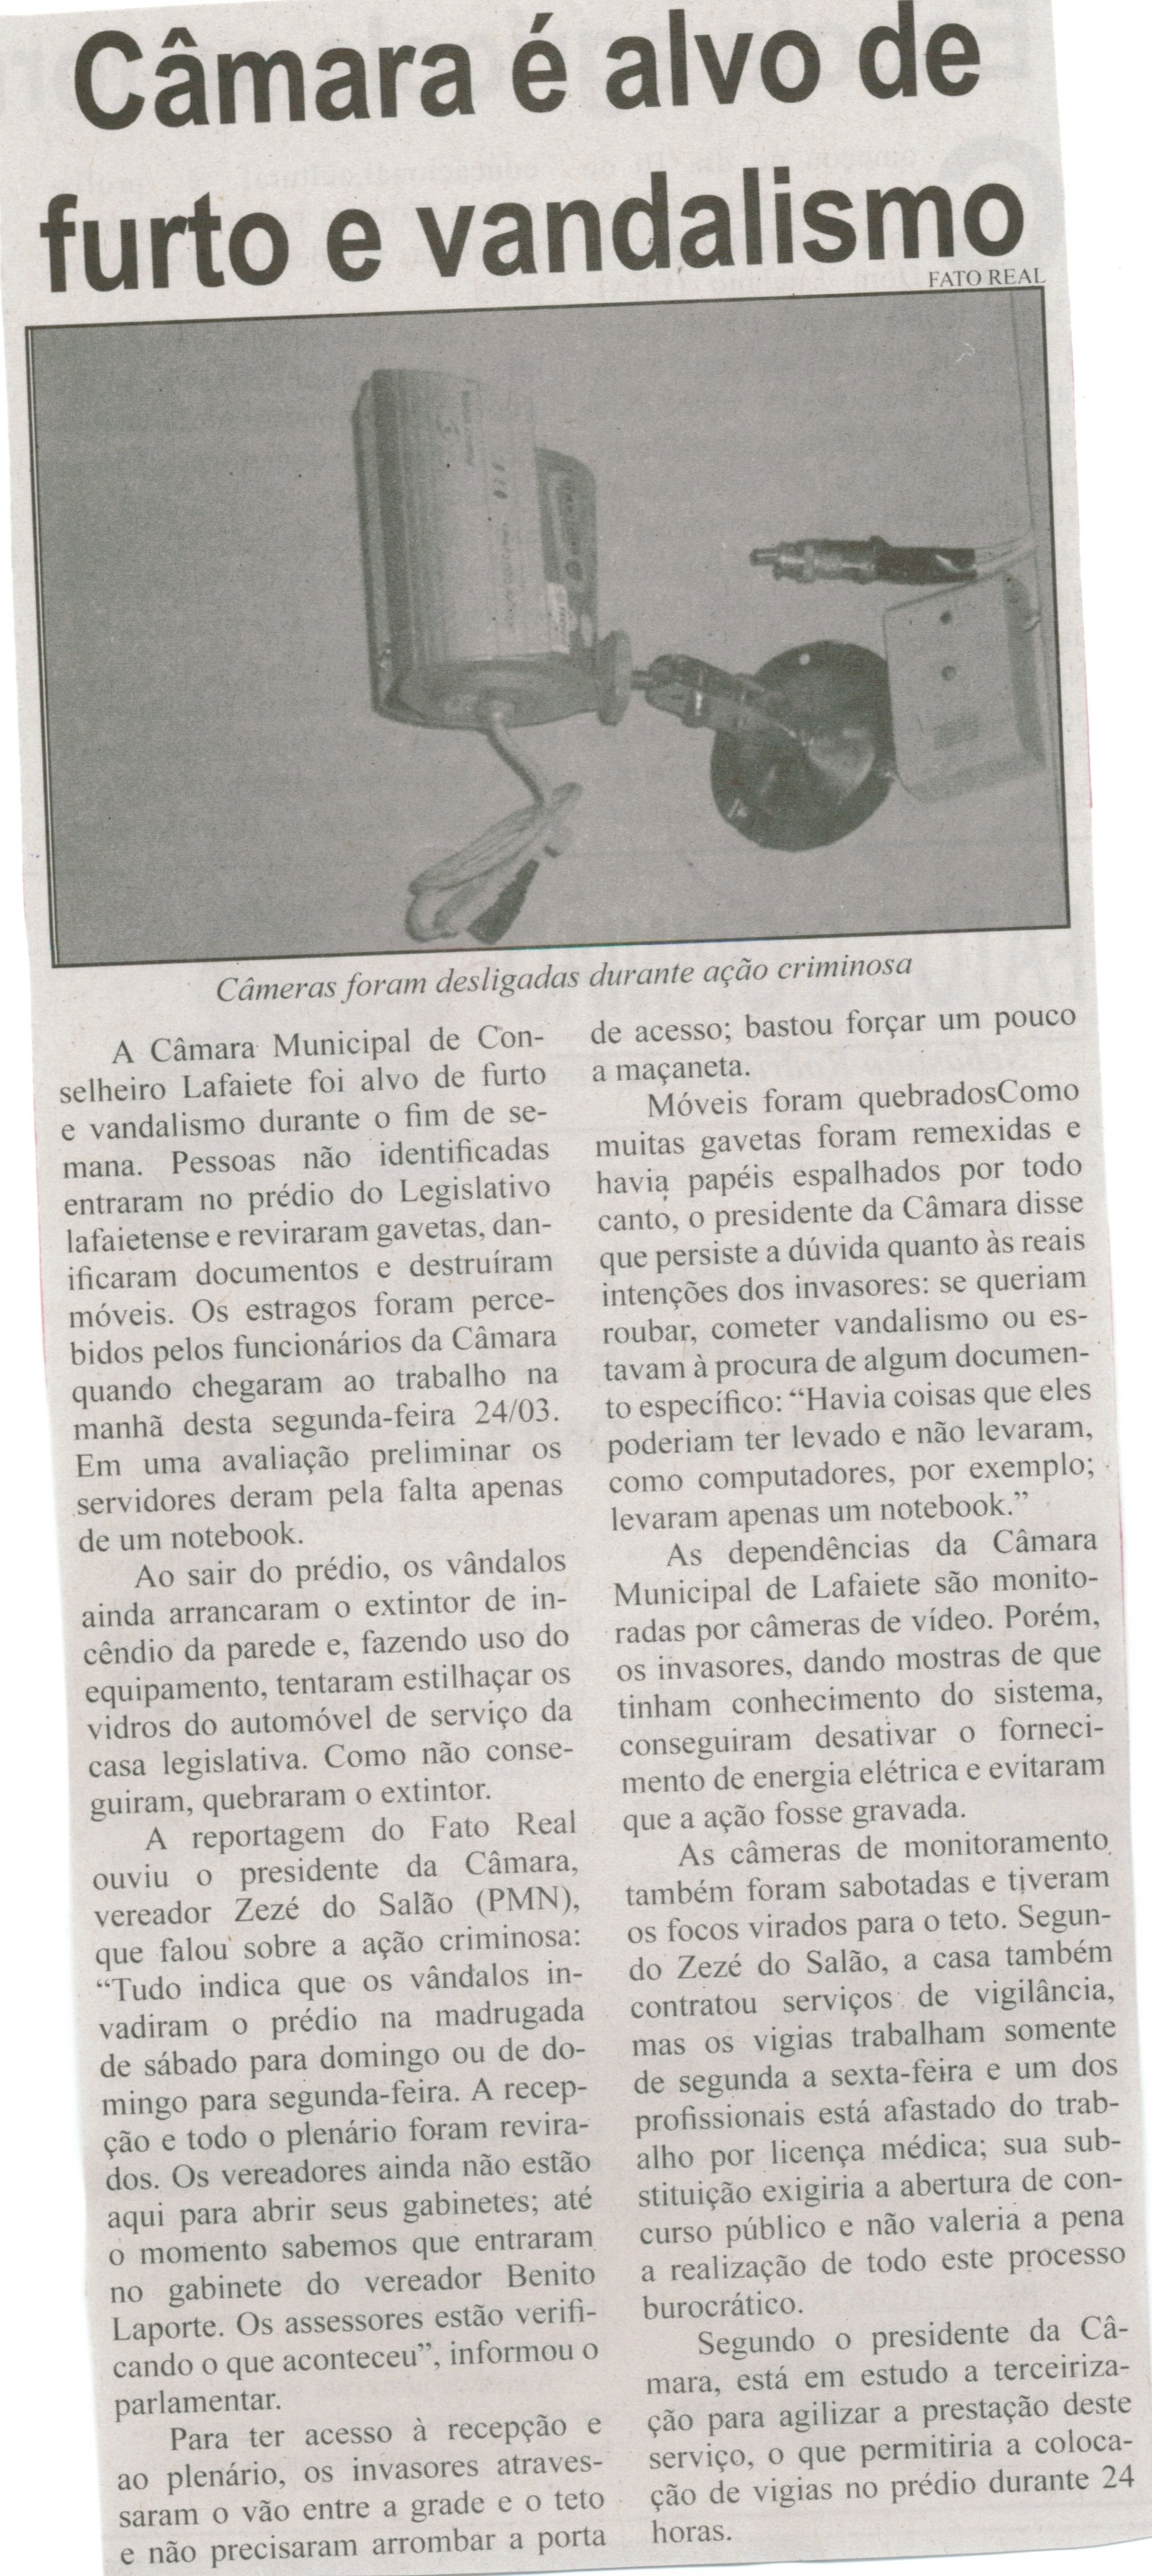 Câmara é alvo de furto e vandalismo. Correio de Minas, Conselheiro Lafaiete, 29 mar. 2014, p. 10.